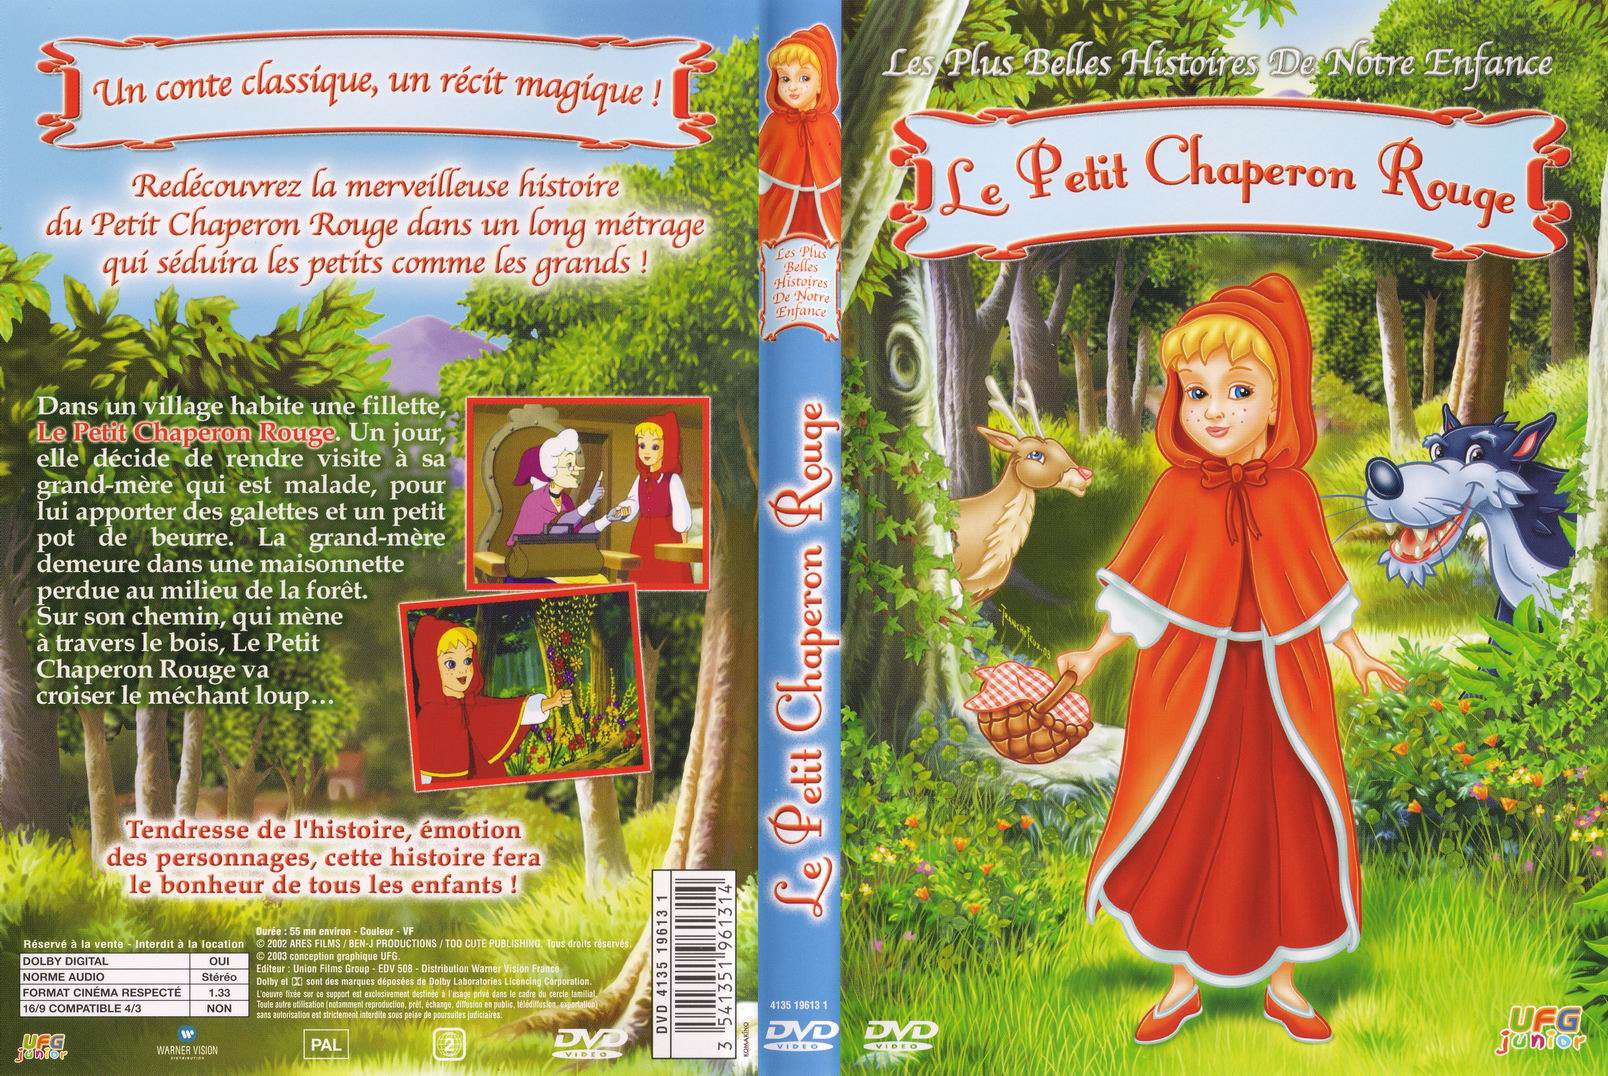 Jaquette DVD Les plus belles histoires de notre enfance - Le petit chaperon rouge